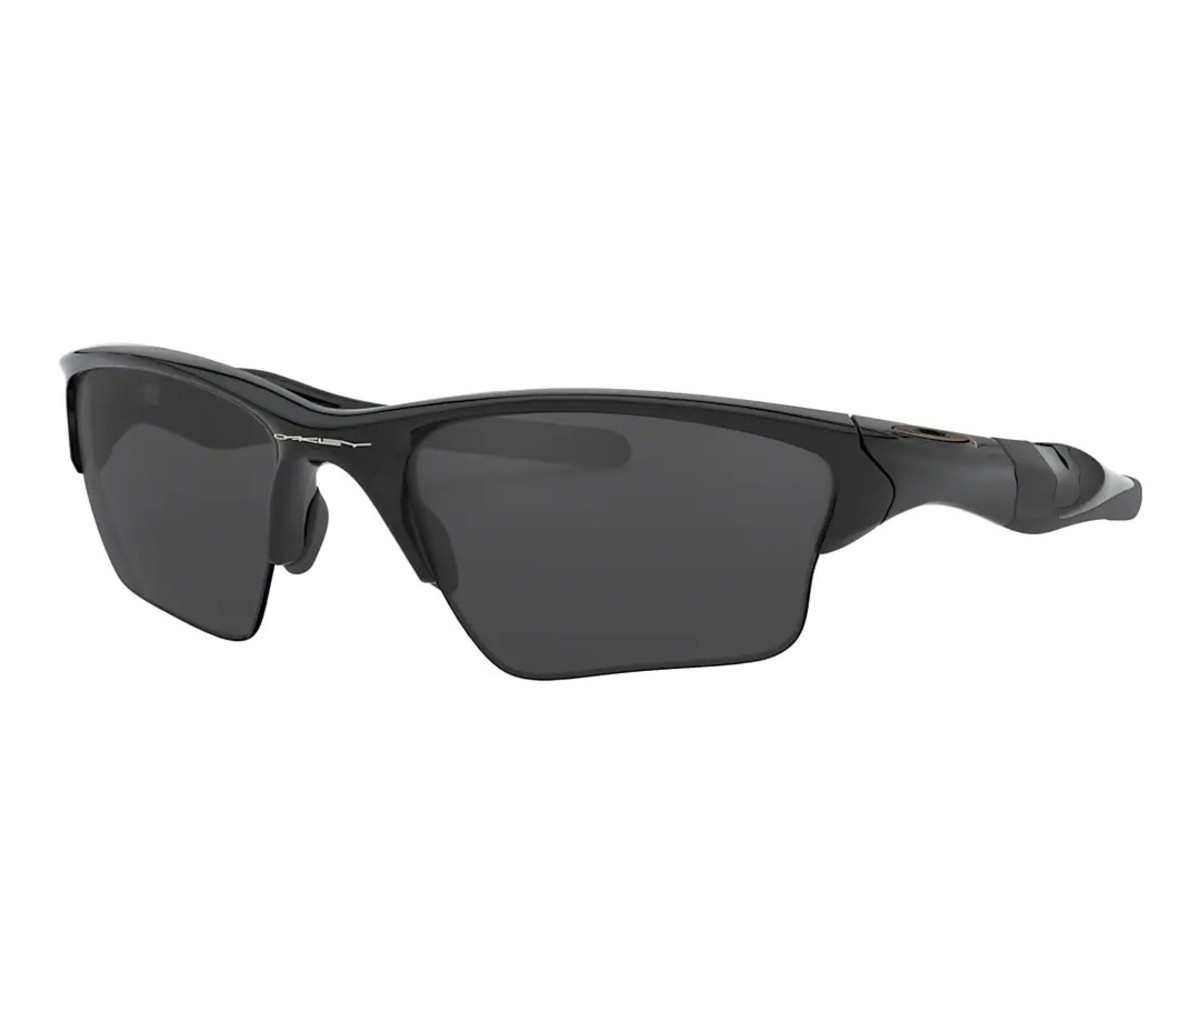 Pair of Oakley Half Jacket 2.0 XL running sunglasses